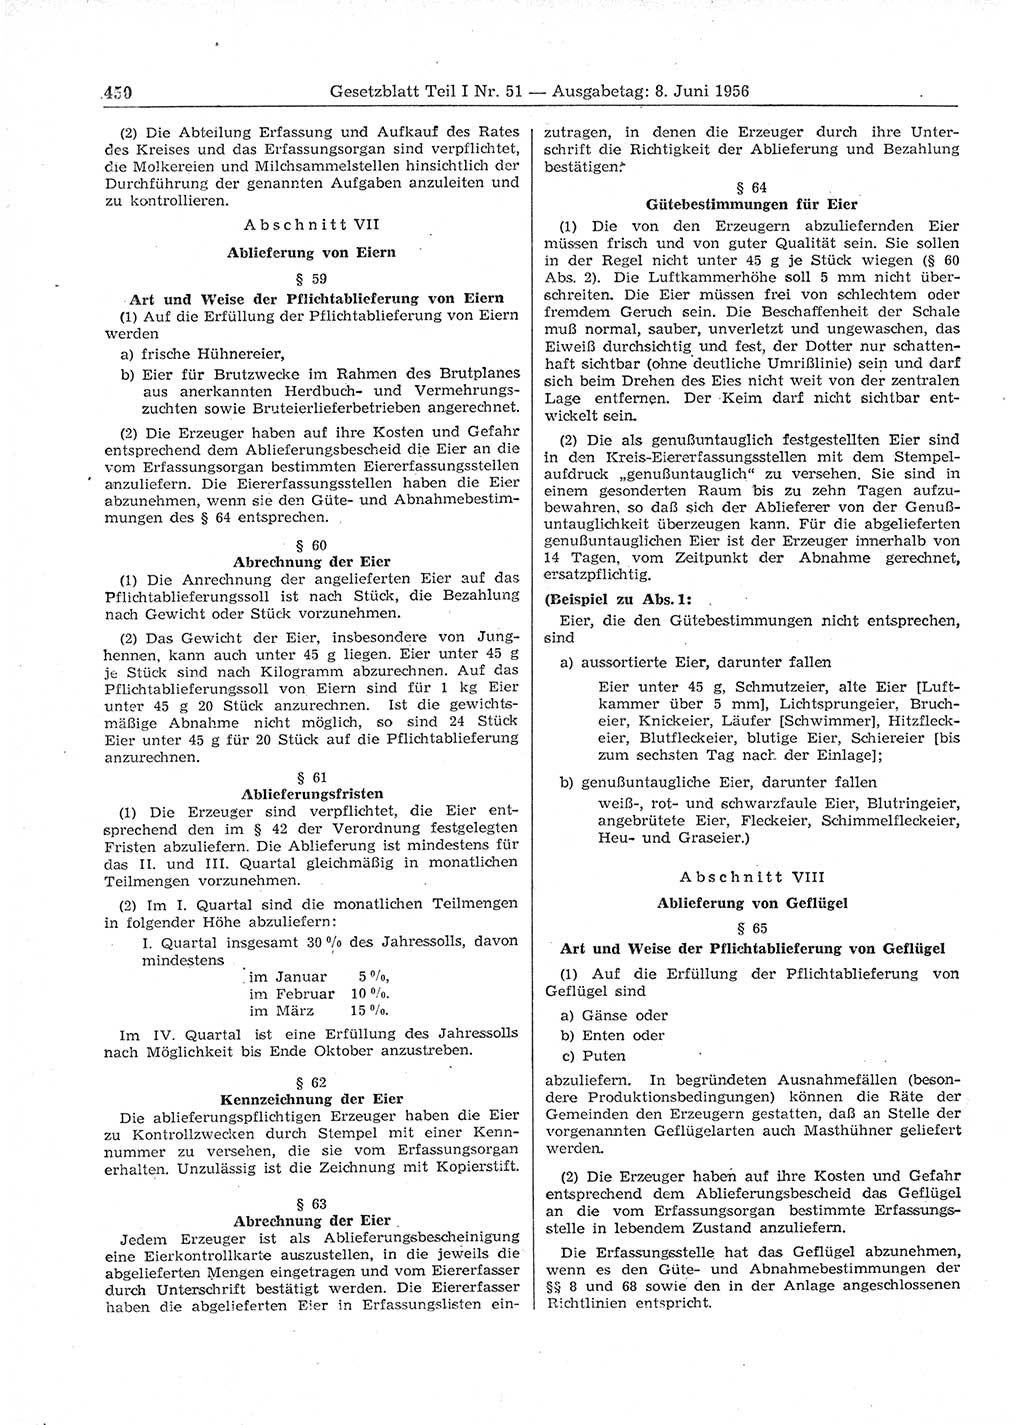 Gesetzblatt (GBl.) der Deutschen Demokratischen Republik (DDR) Teil Ⅰ 1956, Seite 450 (GBl. DDR Ⅰ 1956, S. 450)